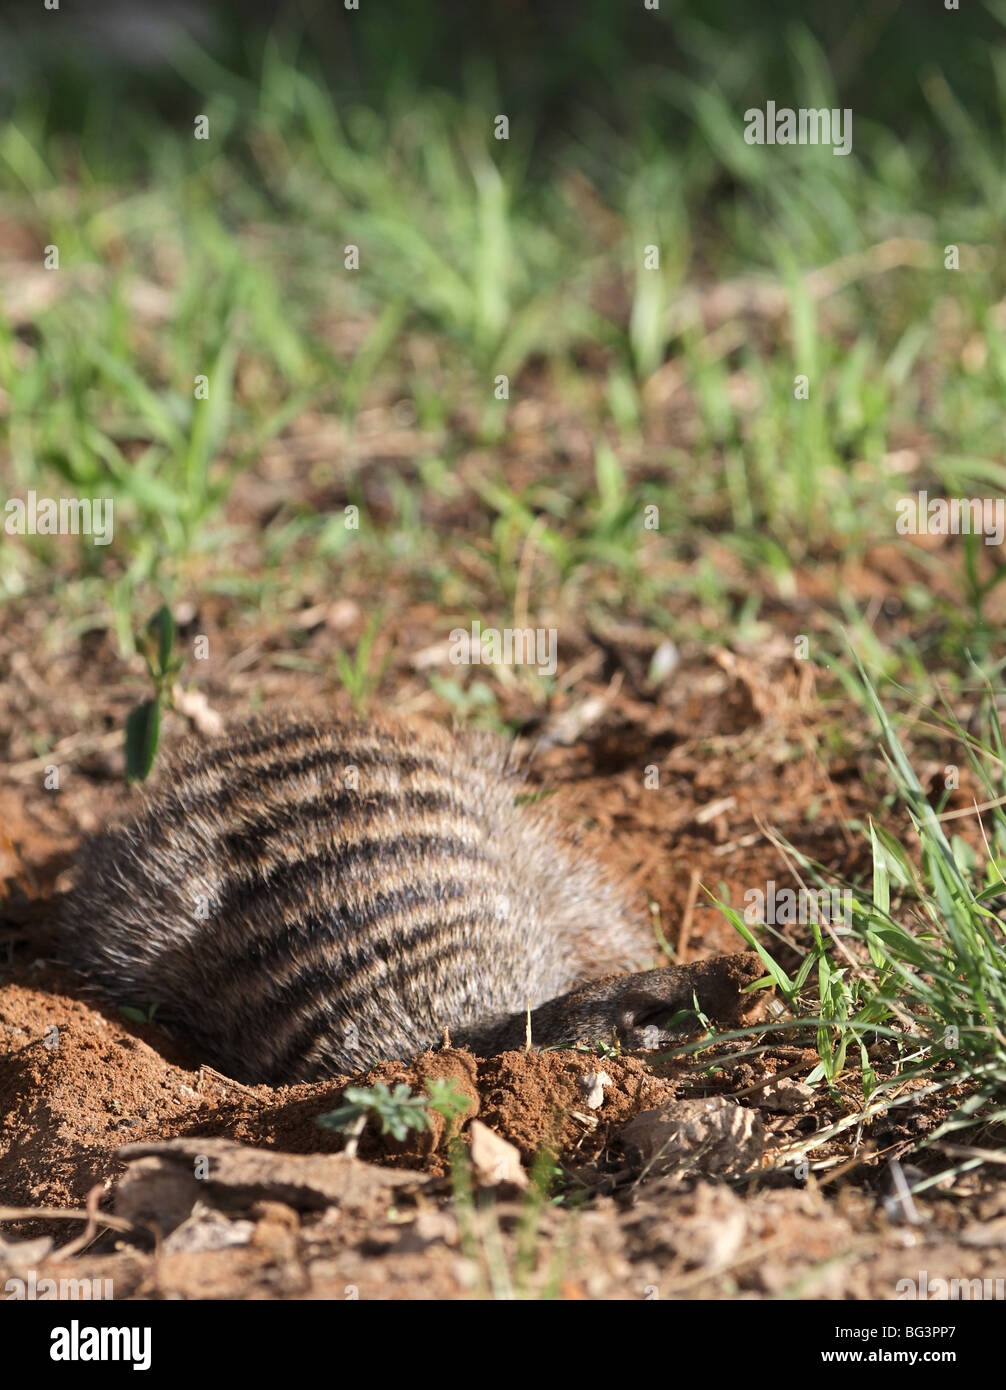 Banded mongoose, mungos mungo Stock Photo